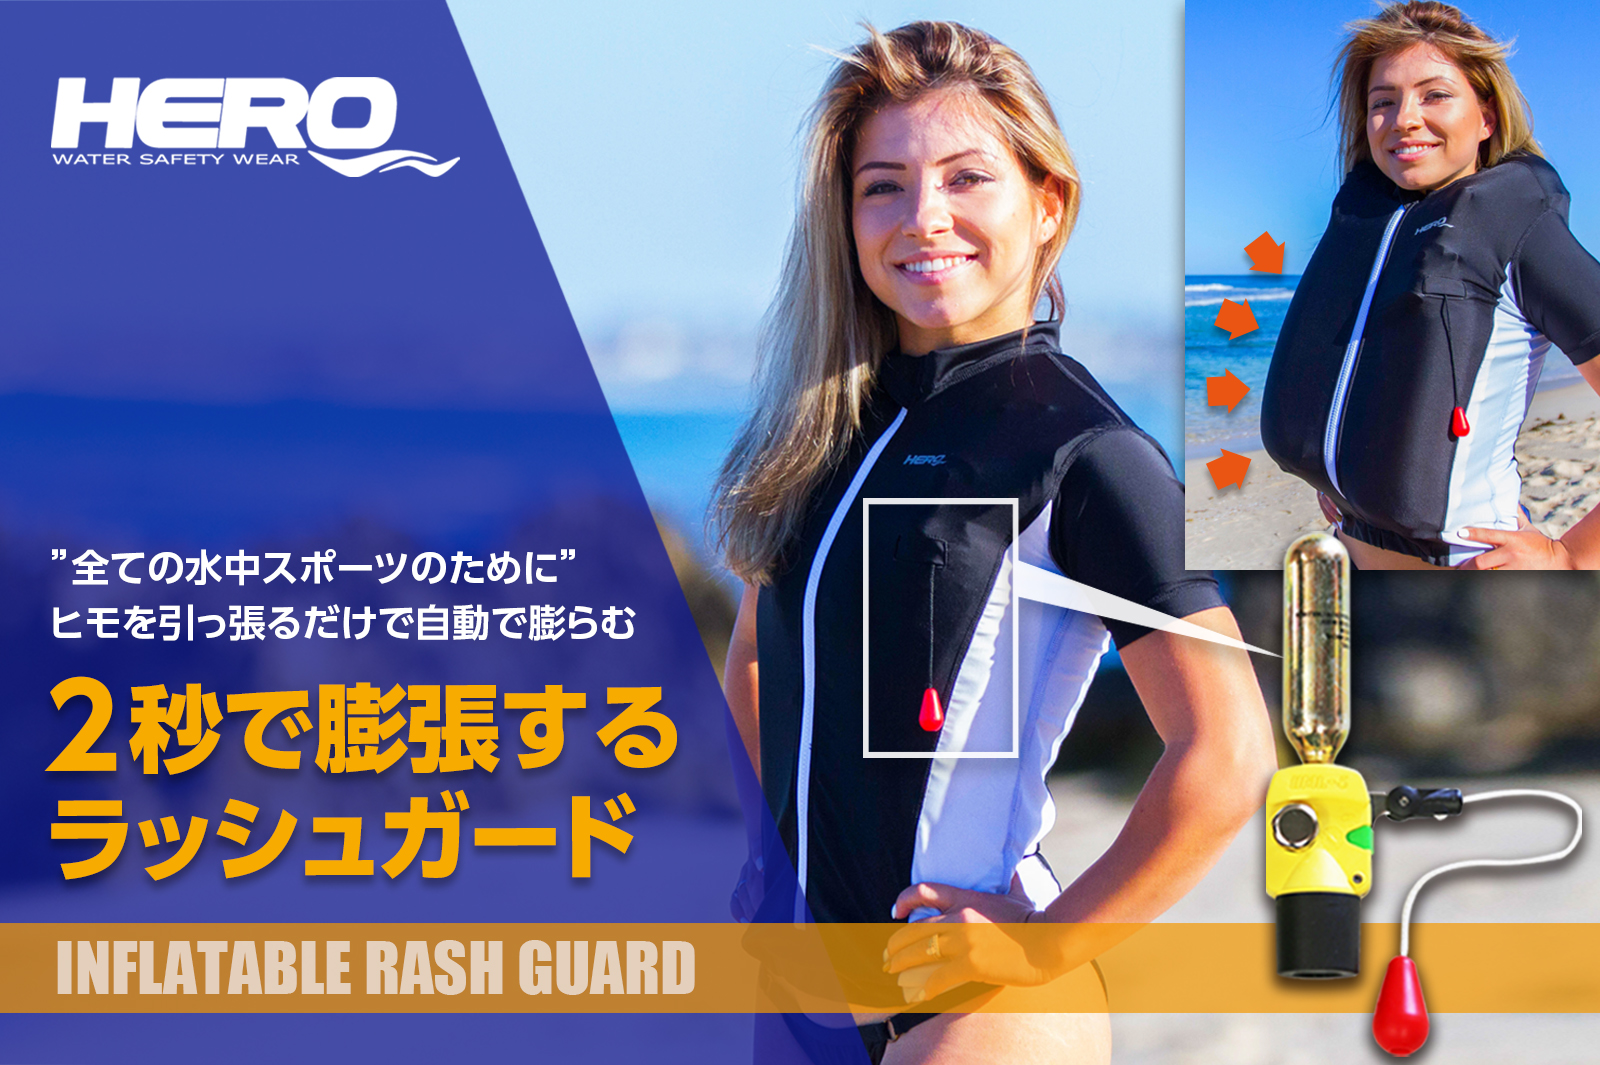 自動膨張ライフジャケット内蔵「HERO インフレ―タブル ラッシュガード」